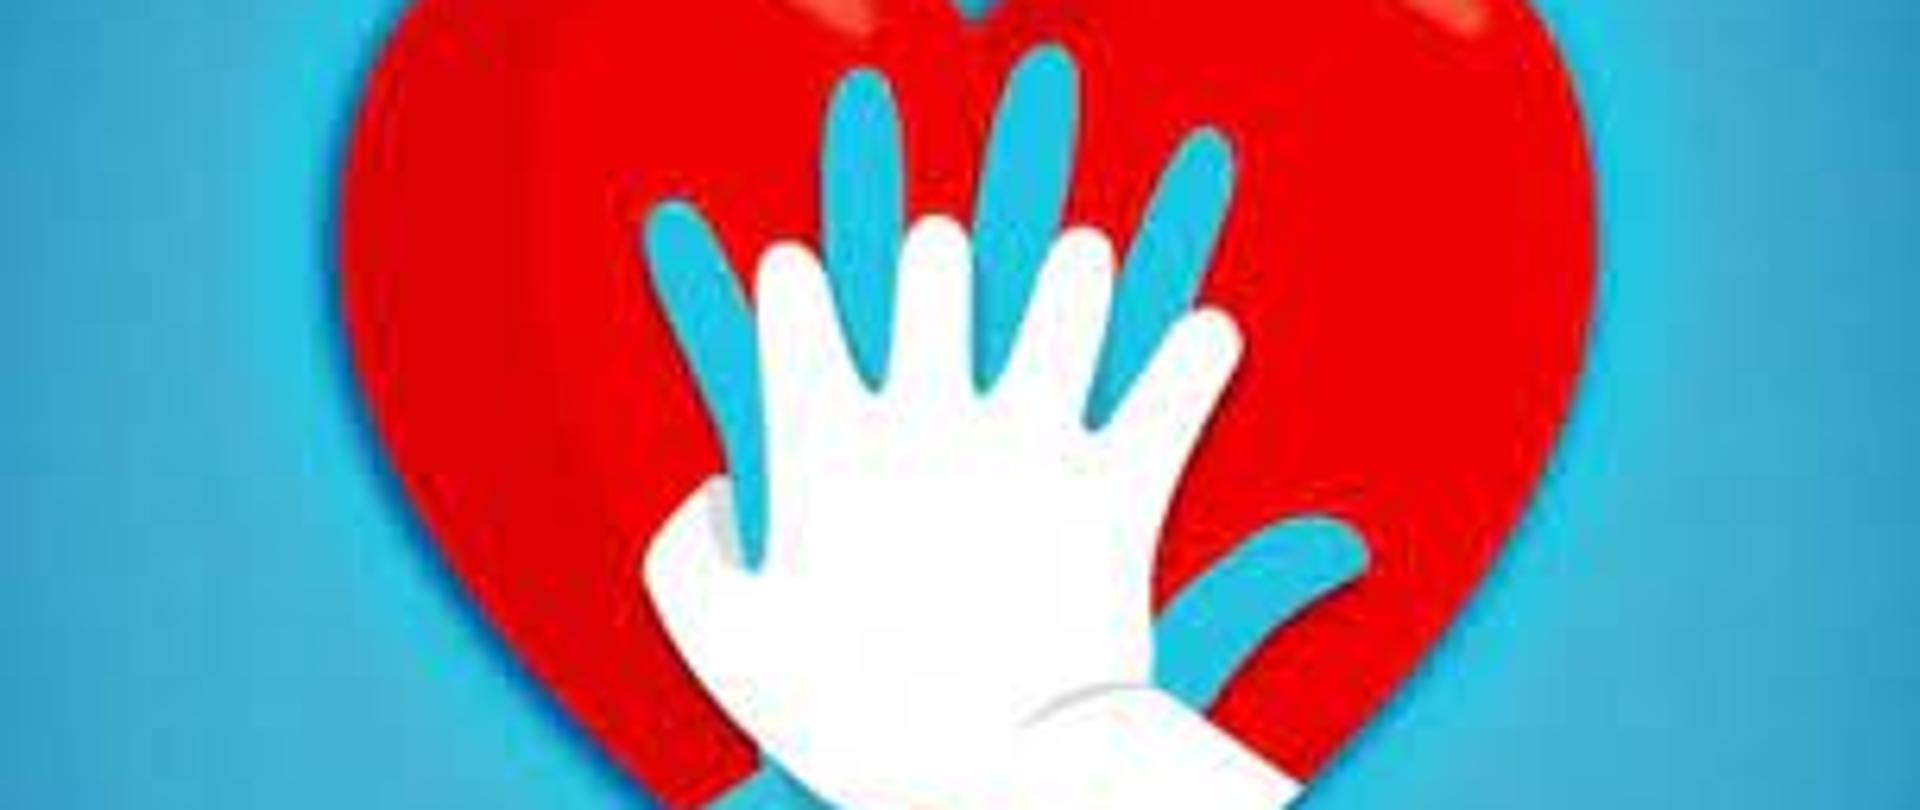 Obraz przedstawia czerwone serca na niebieskim tle. Na sercu ułożone są dwie dłonie w kolorze białym i niebieskim